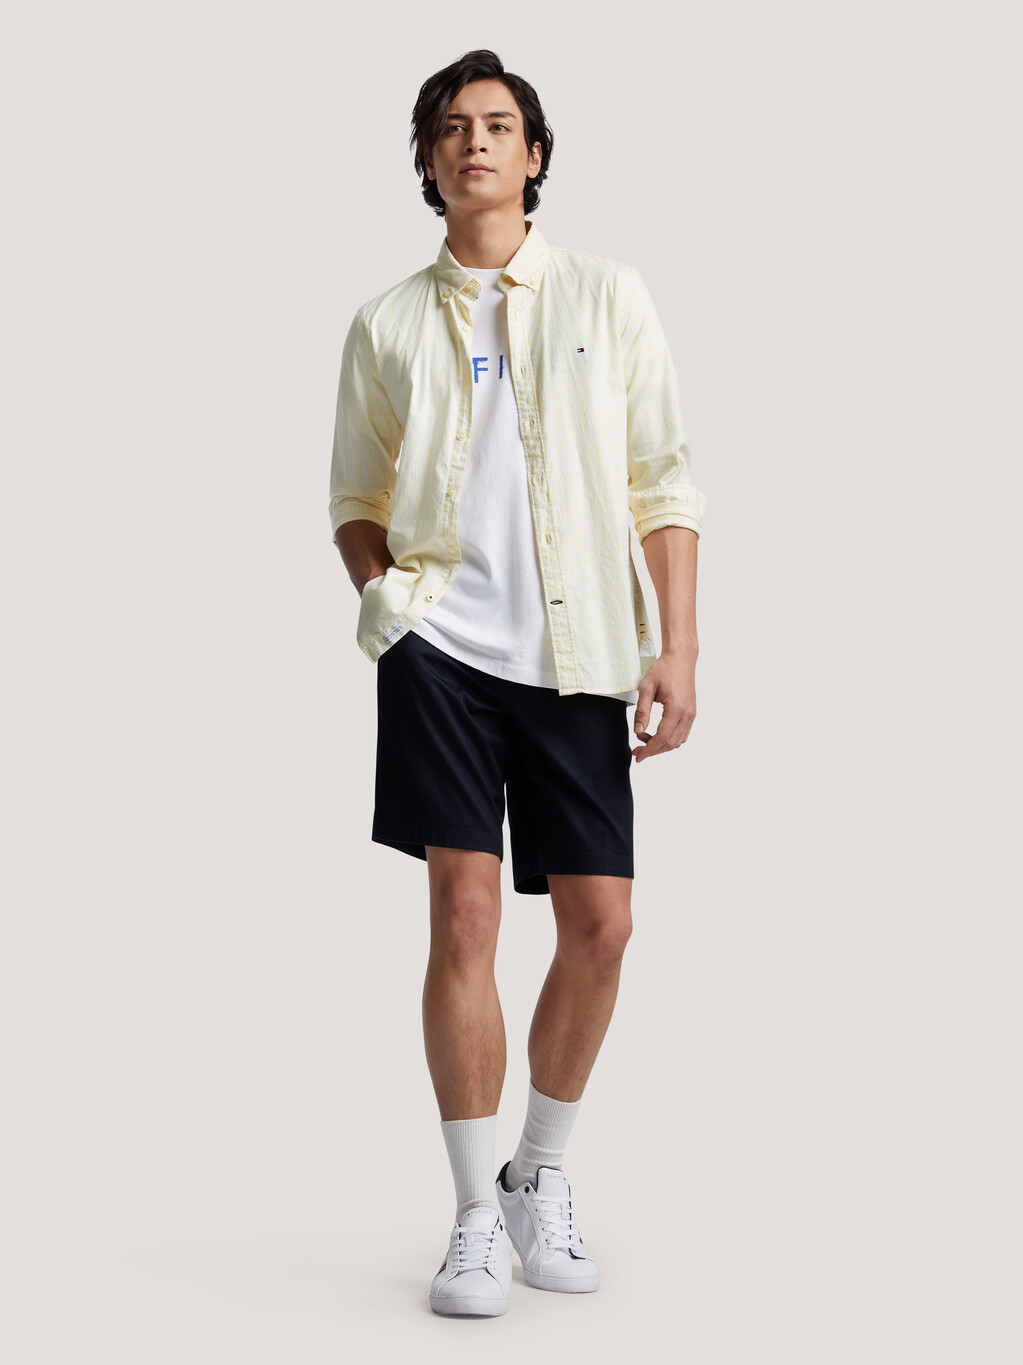 Stripe Regular Fit Shirt, Yellow / Optic White, hi-res